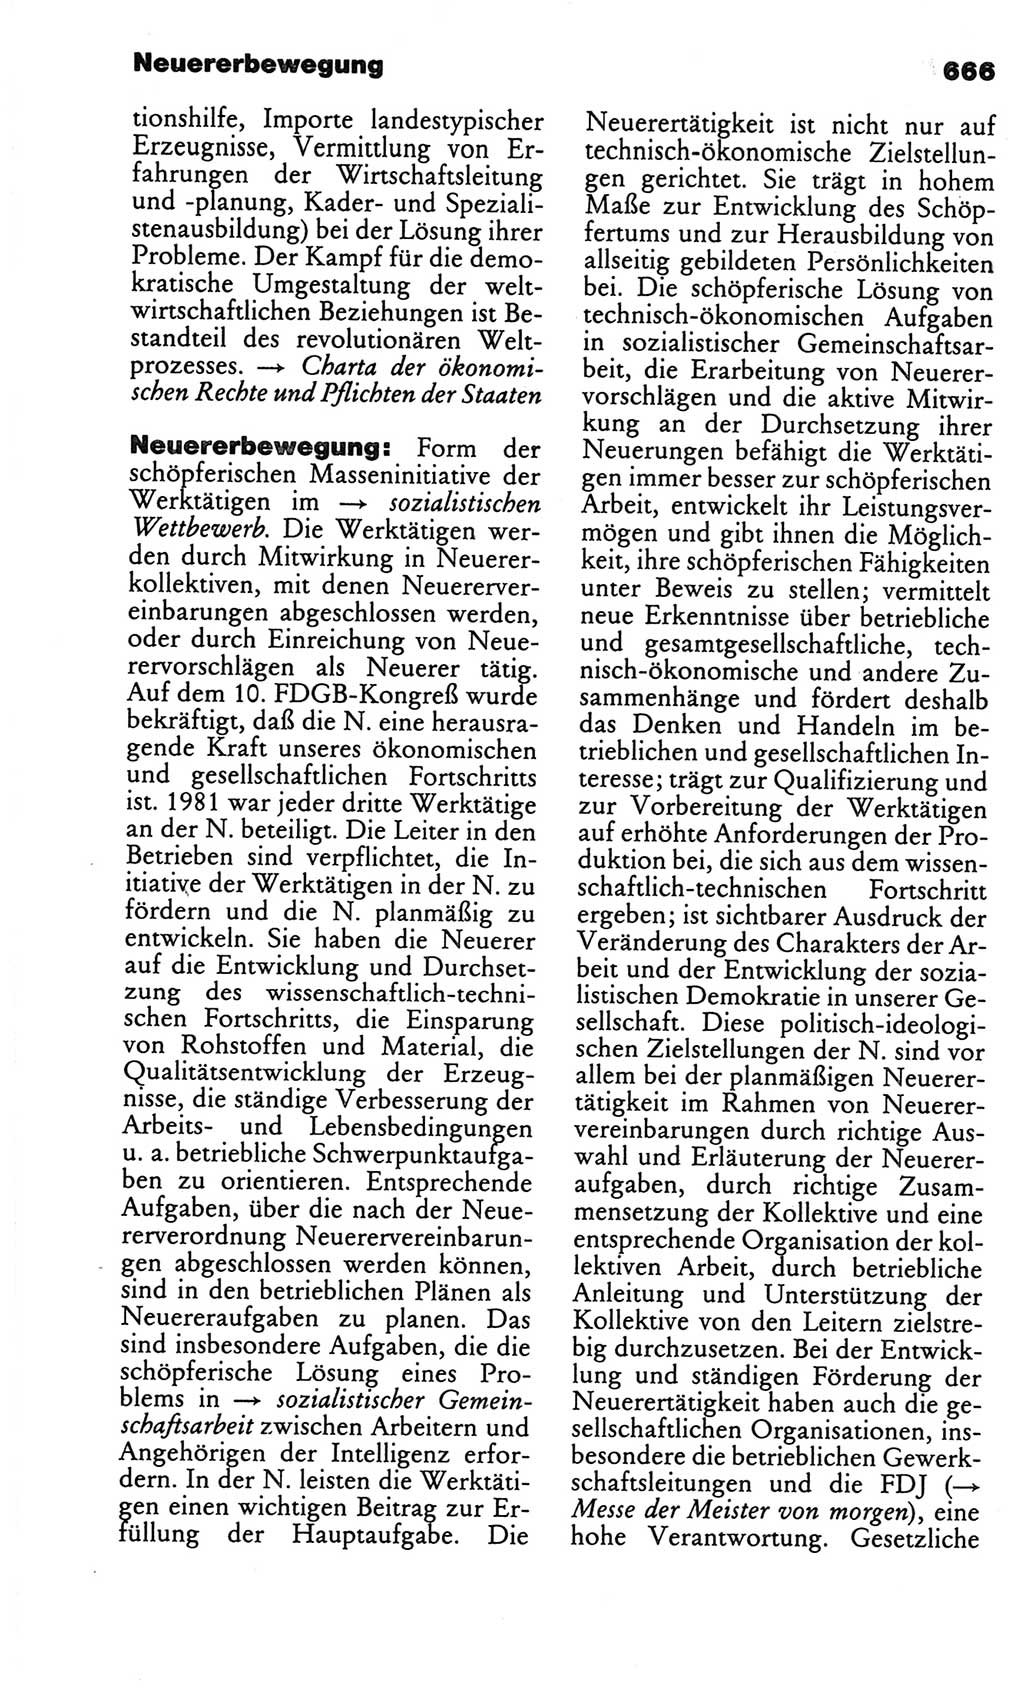 Kleines politisches Wörterbuch [Deutsche Demokratische Republik (DDR)] 1986, Seite 666 (Kl. pol. Wb. DDR 1986, S. 666)